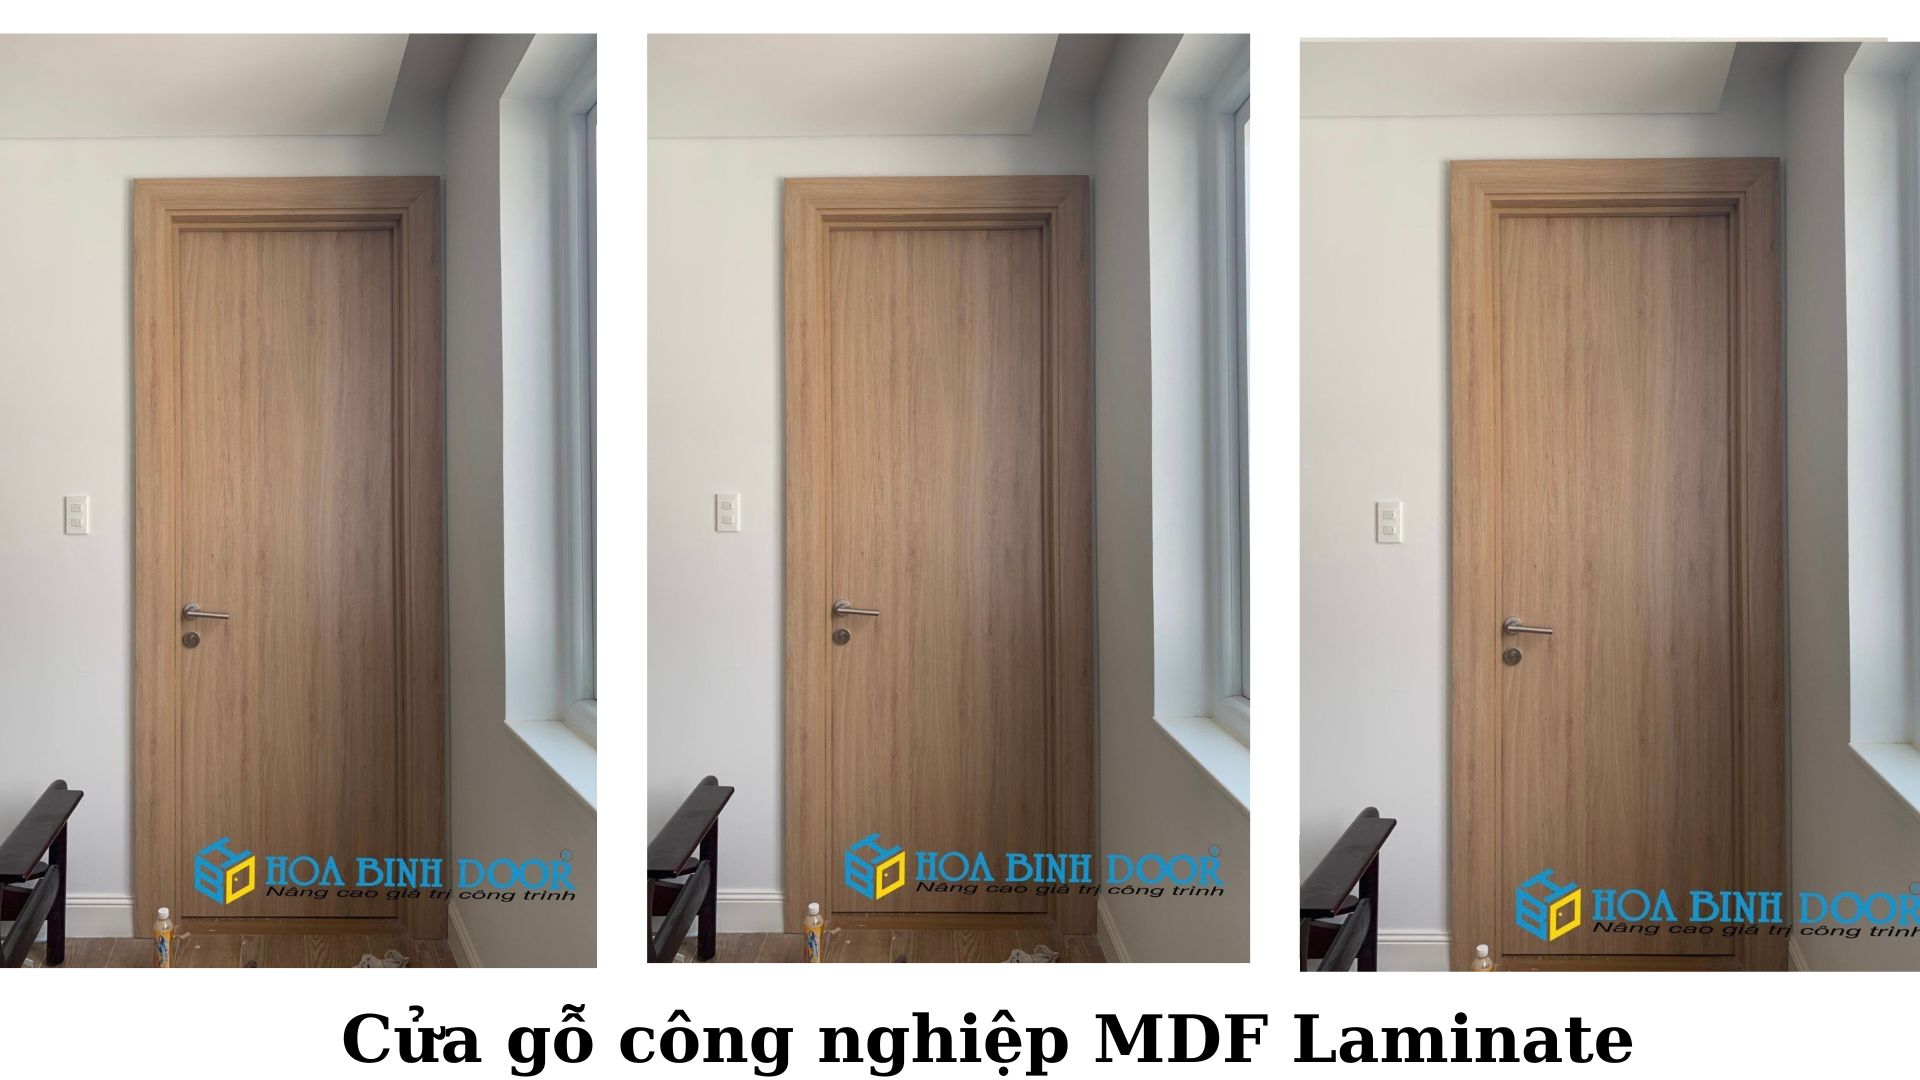 Cửa MDF Laminate tại Quận 9